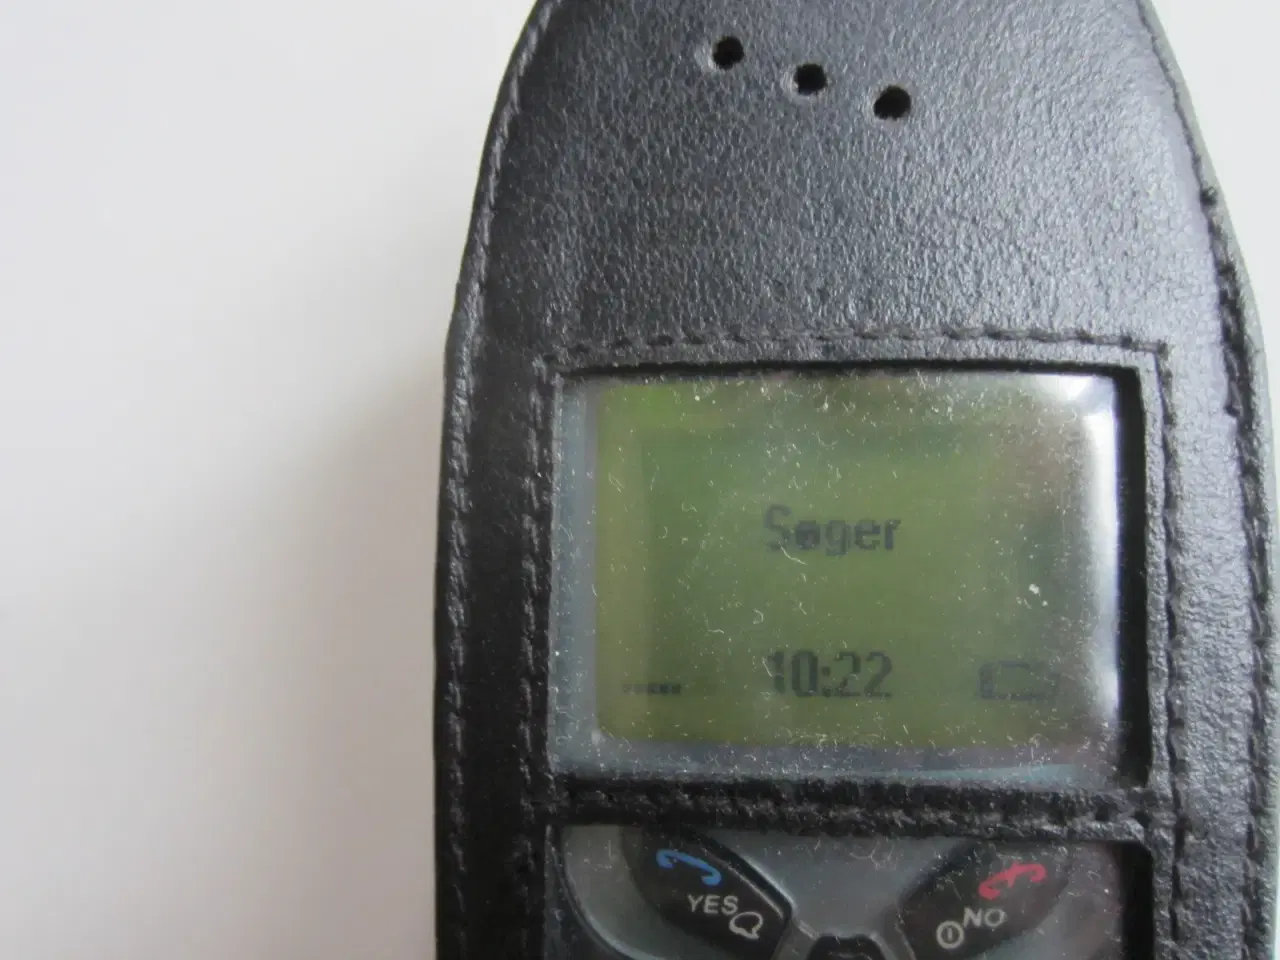 Billede 1 - Ericsson A2628s mobiltelefon med defekt batteri